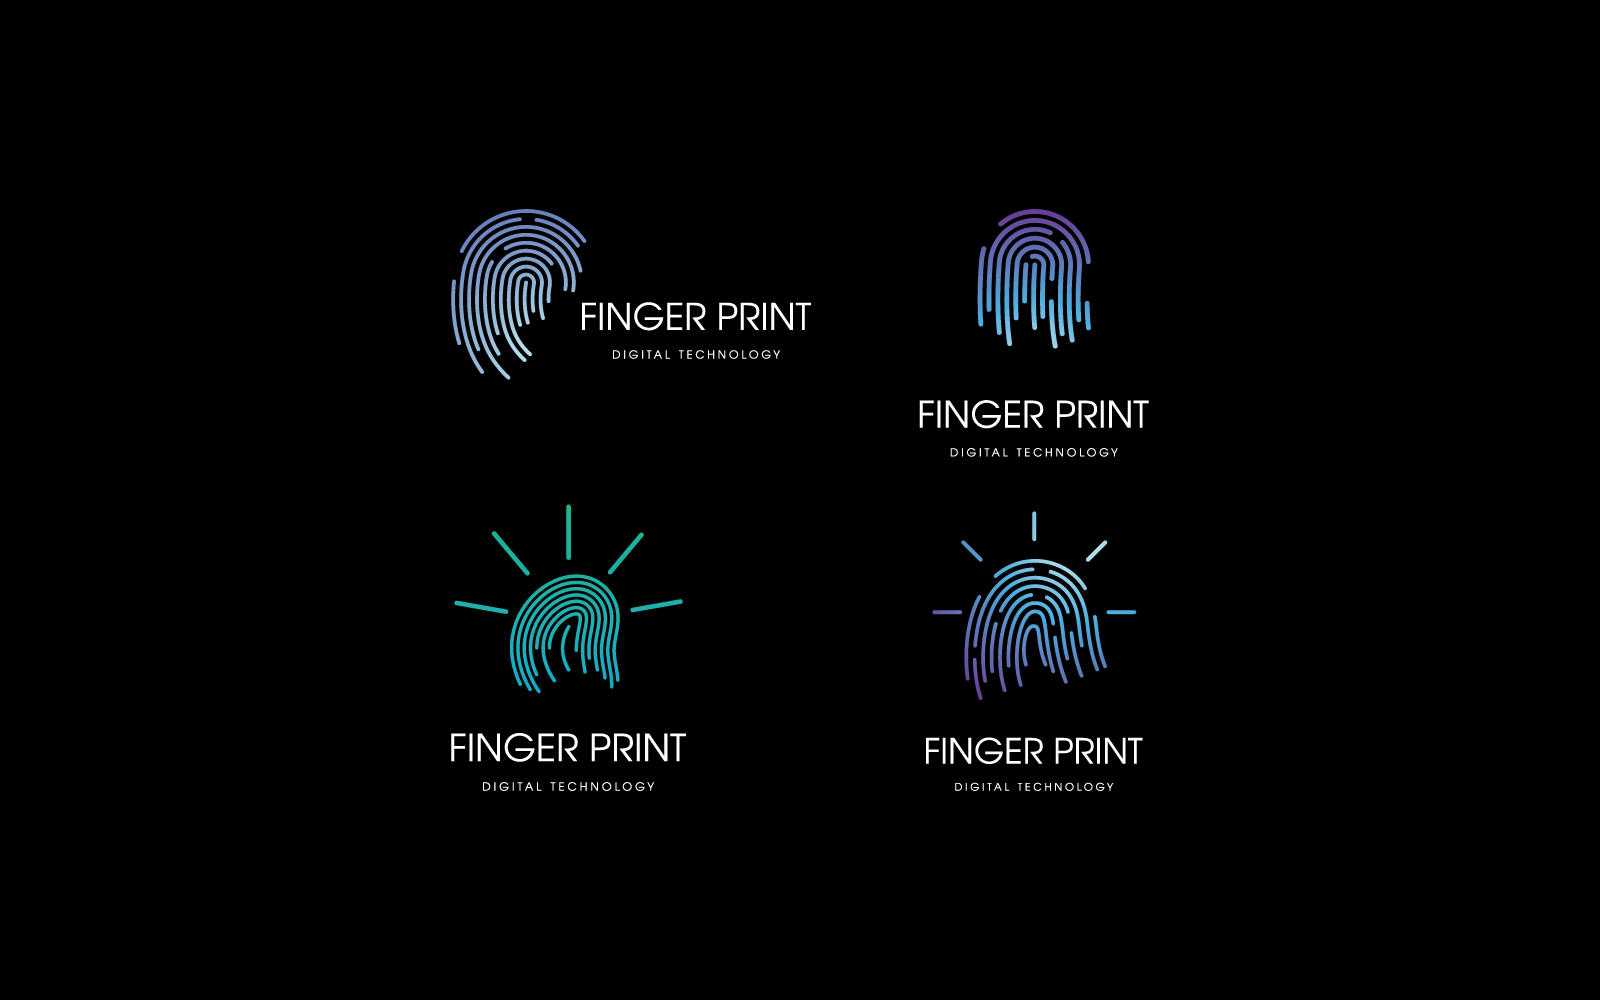 Fingerprint technology illustration logo vector template